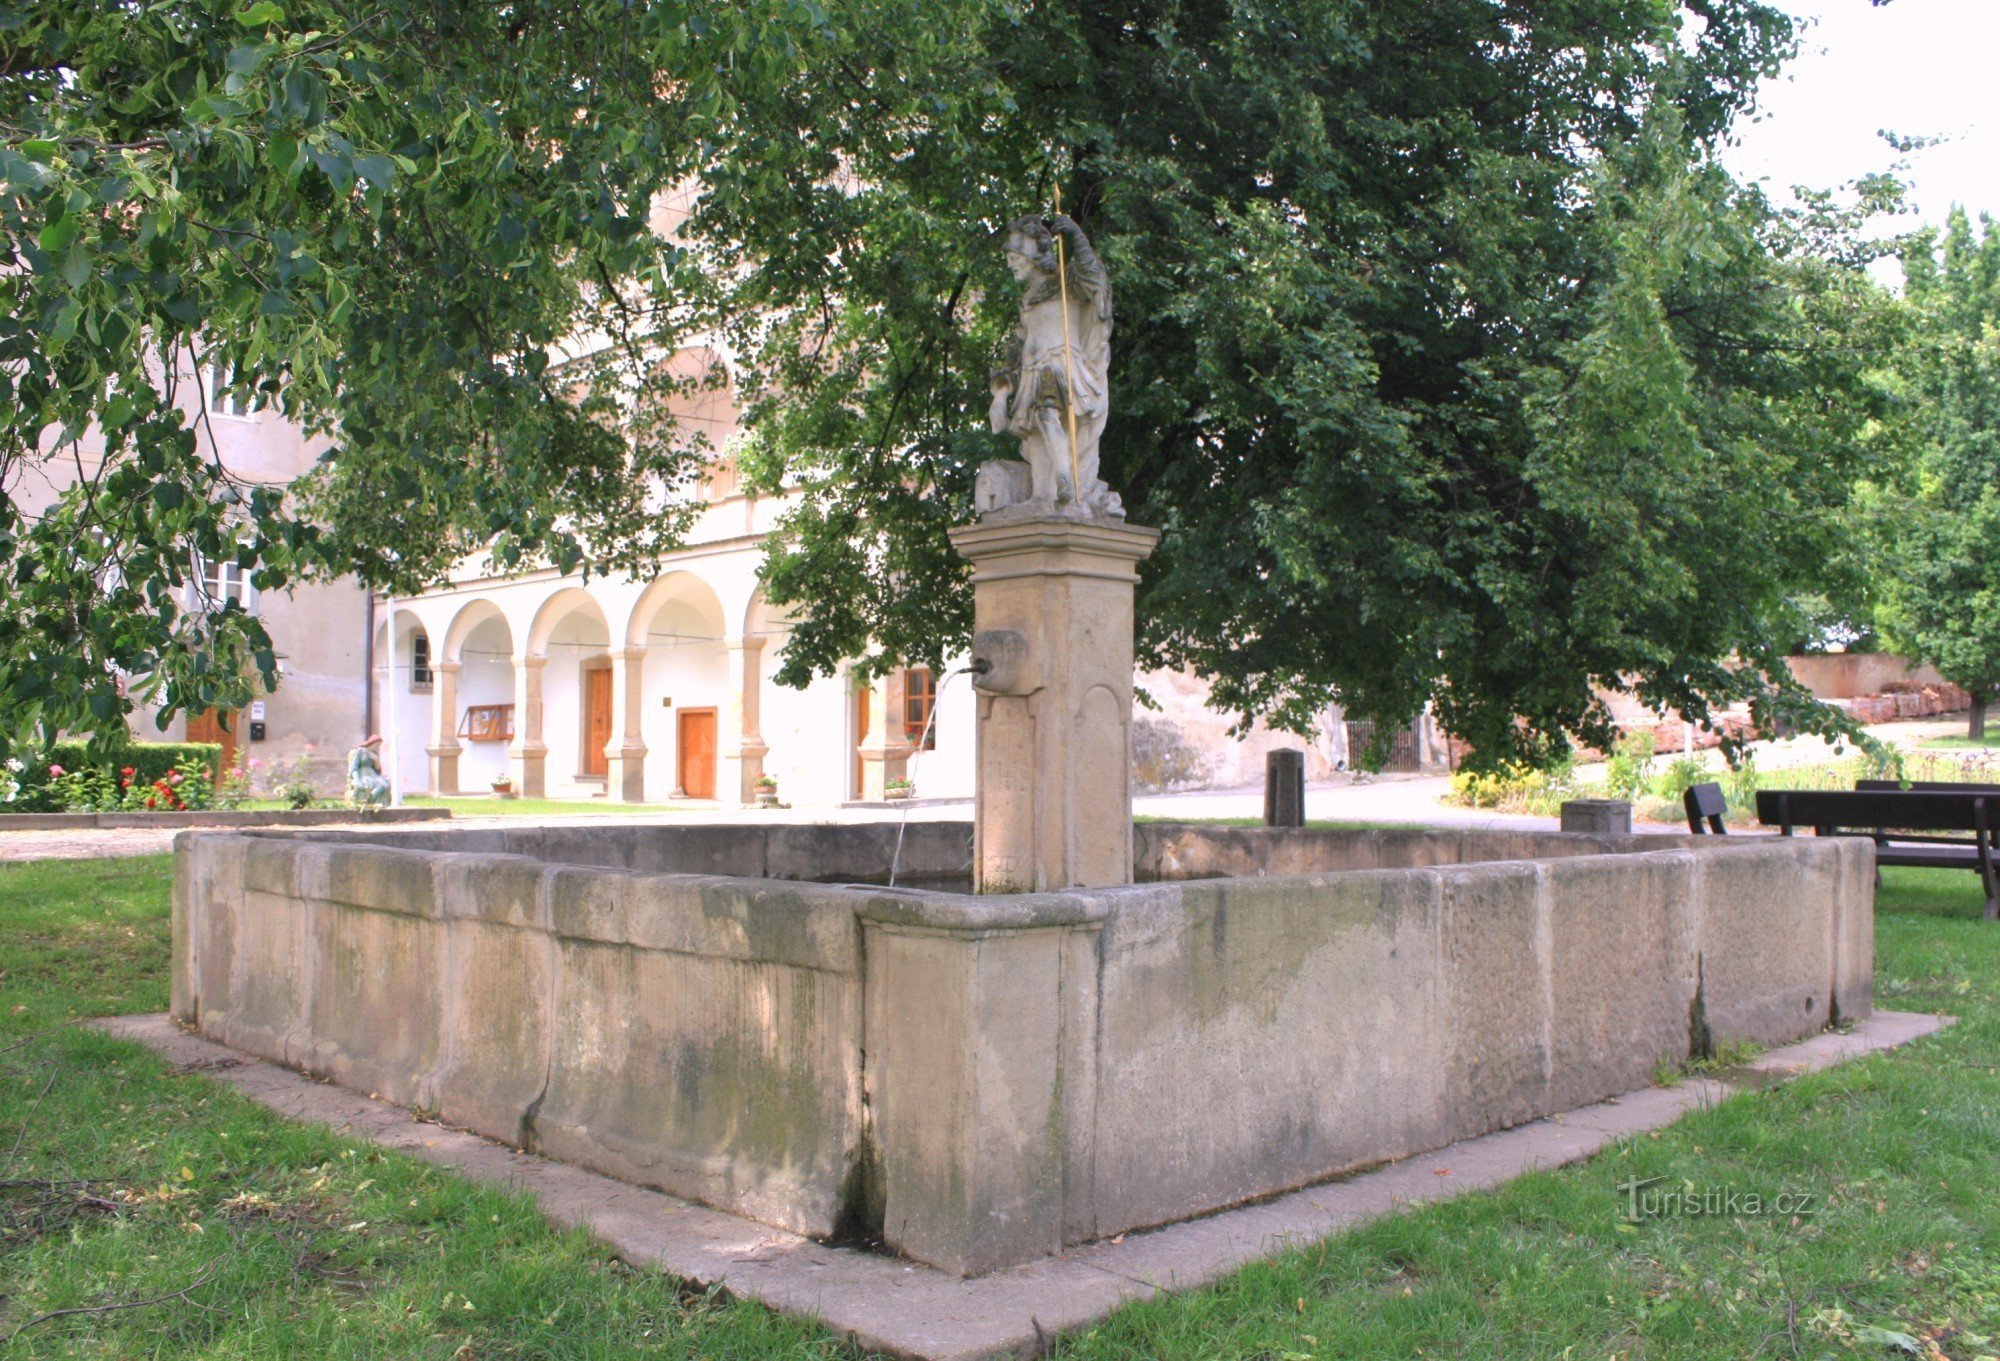 Bohutice - fontanna zamkowa